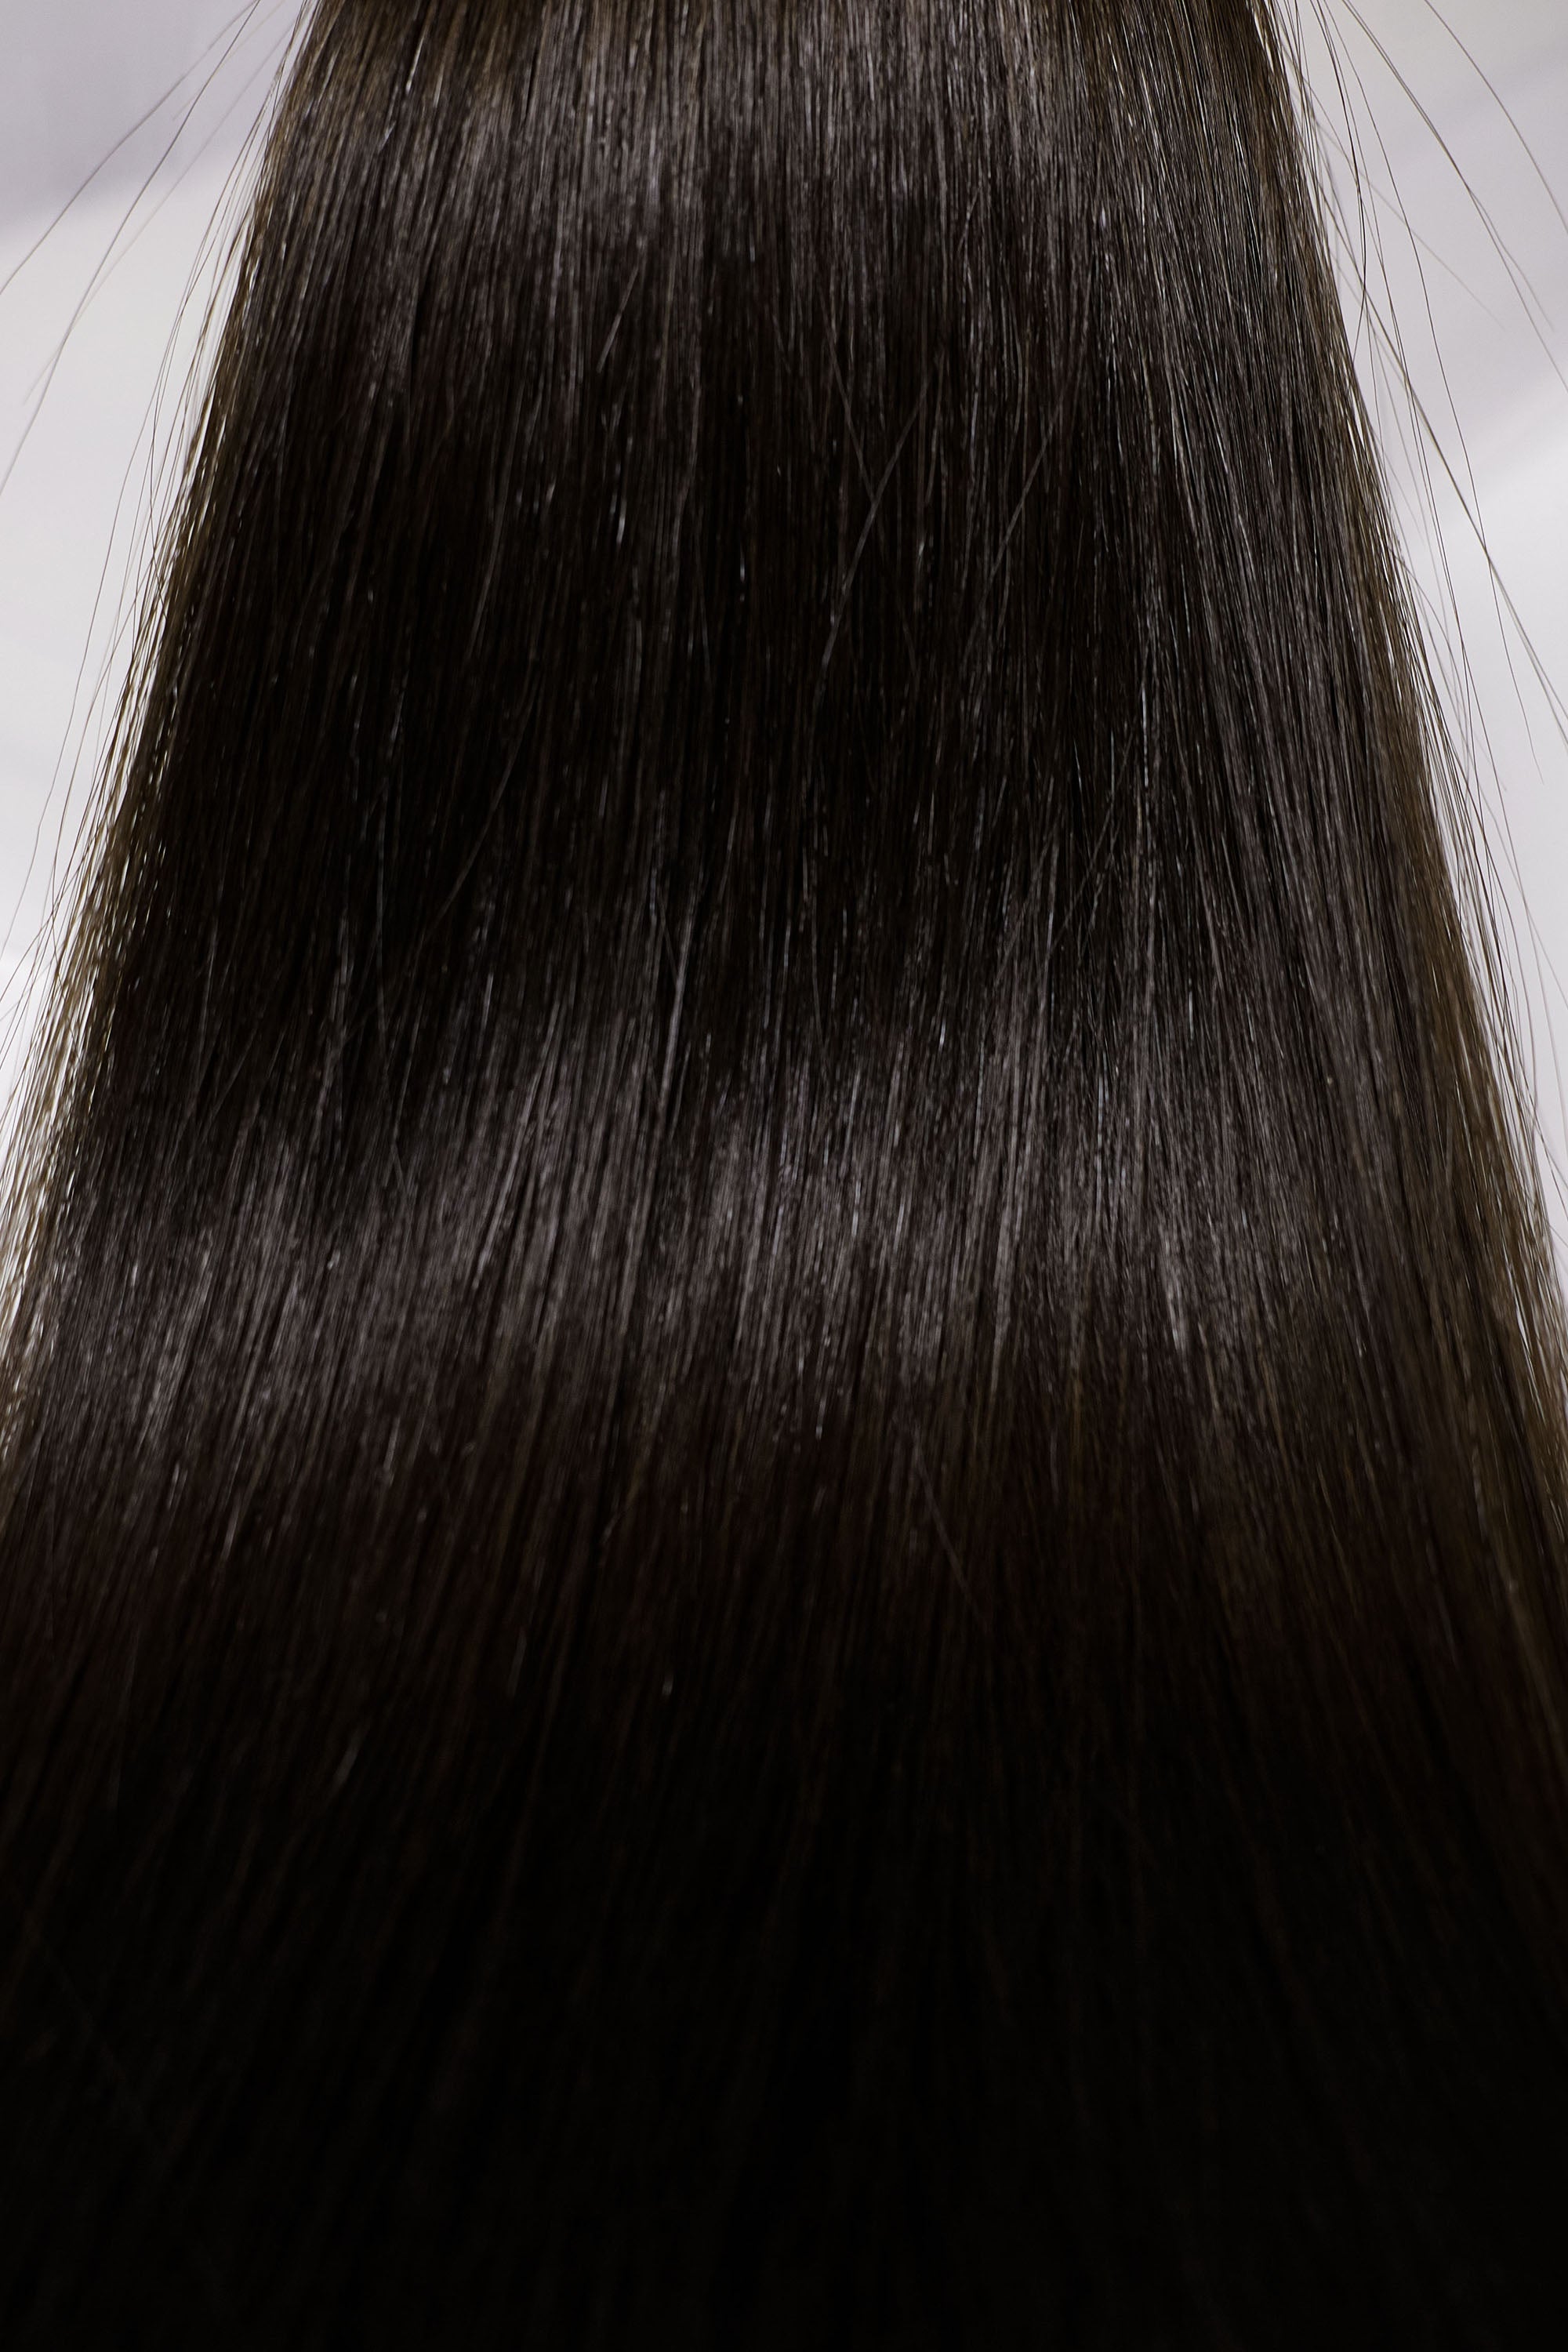 Behair professional Bulk hair "Premium" 18" (45cm) Natural Straight Natural Black #1B - 25g hair extensions